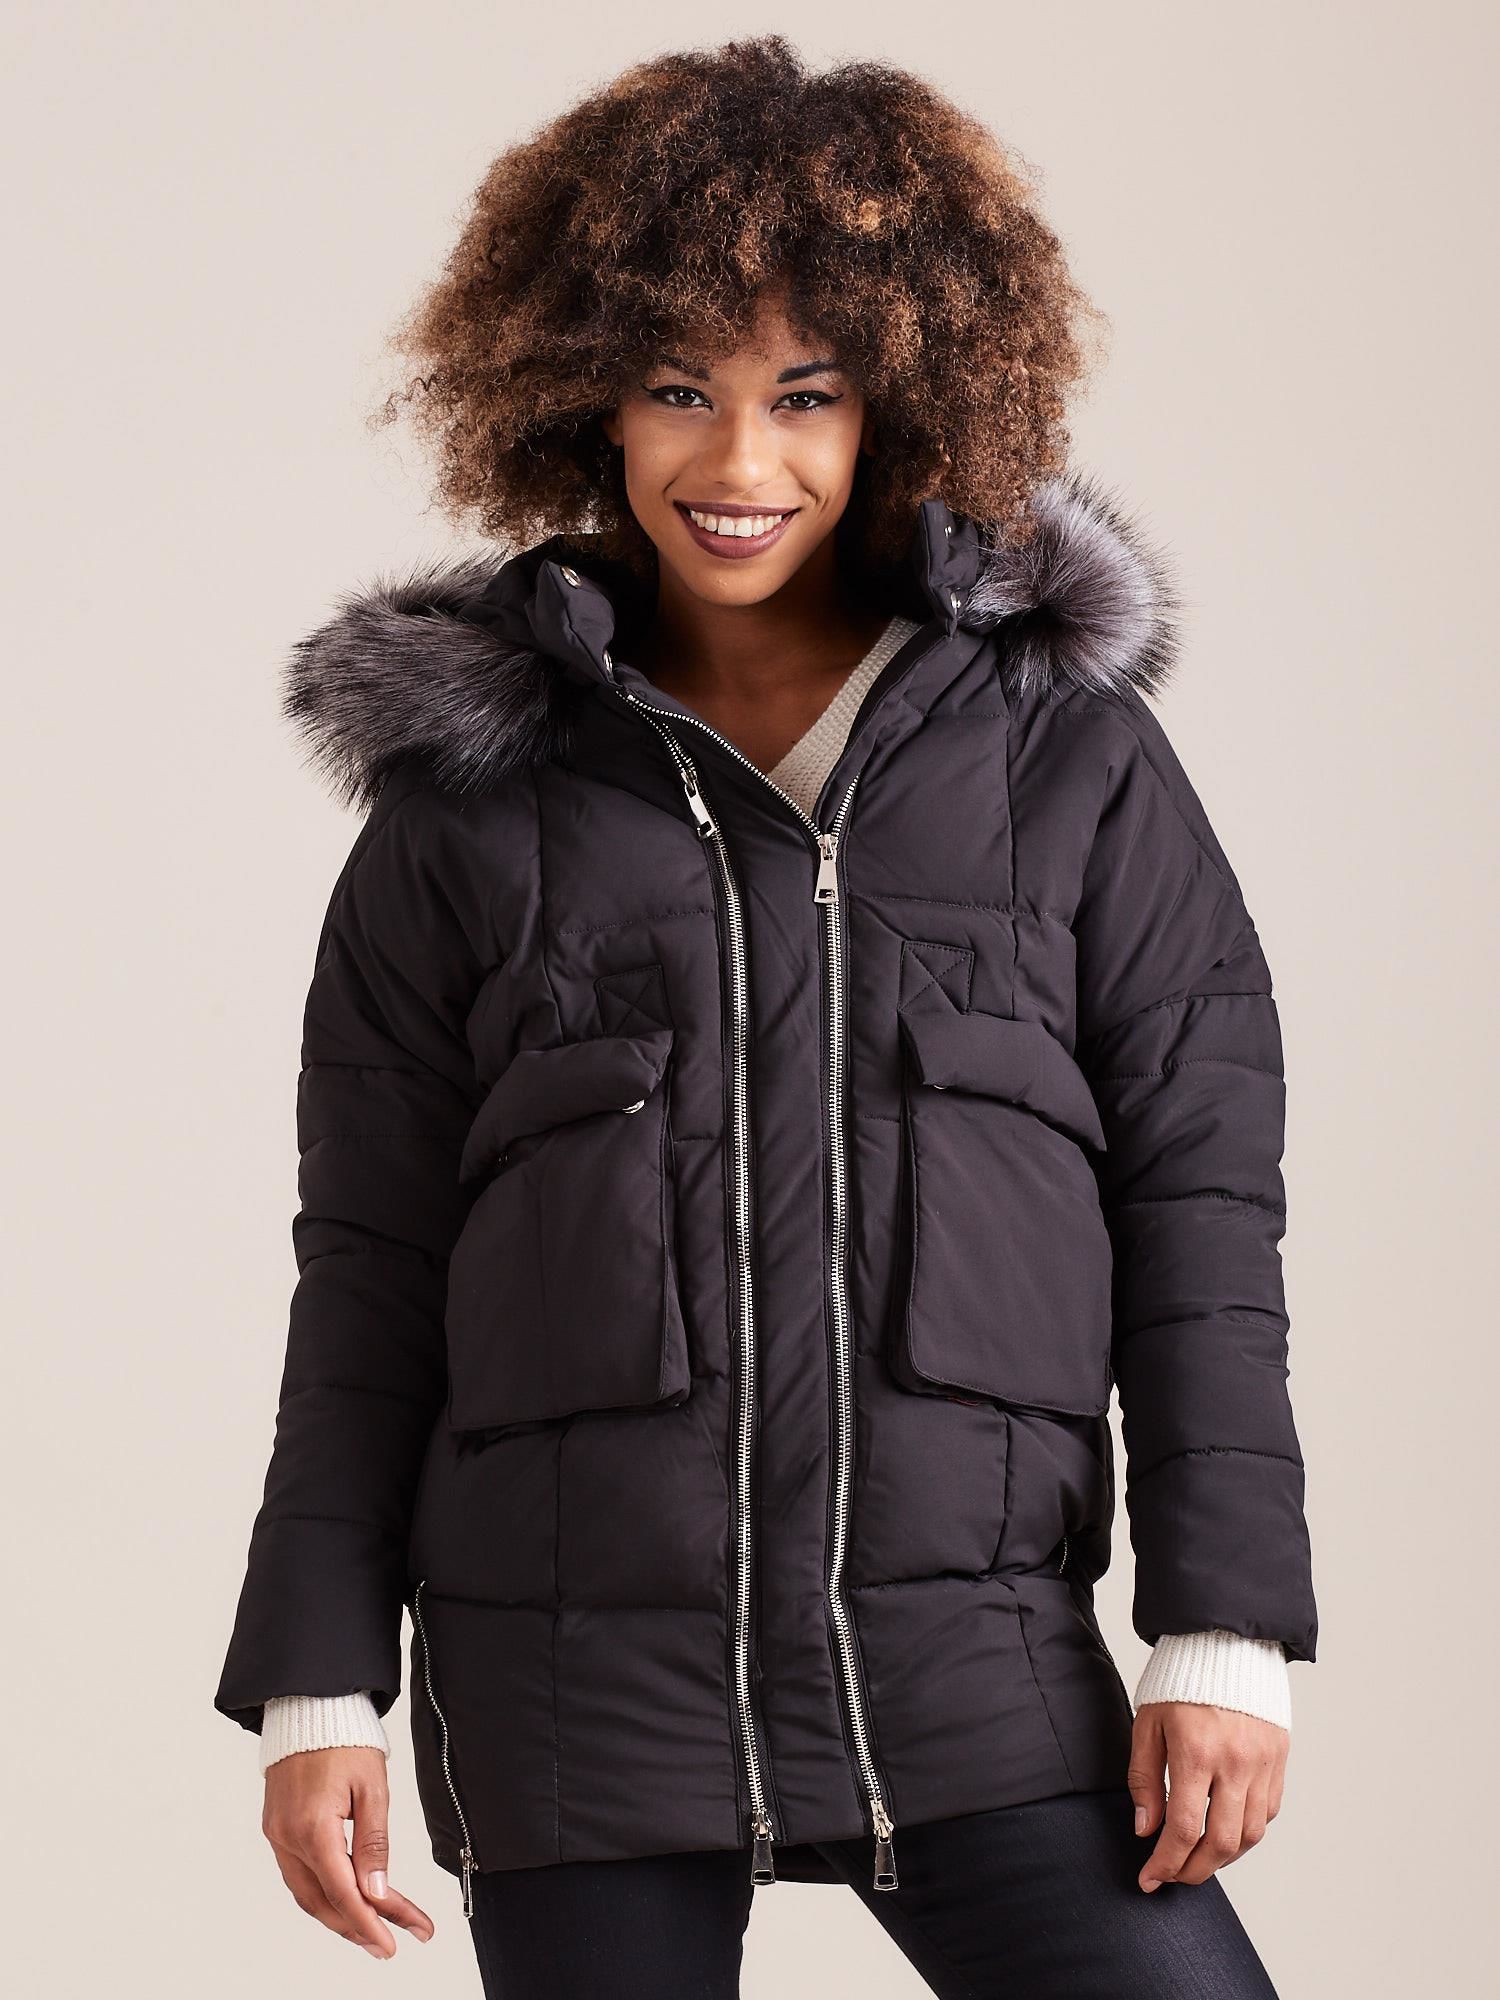 Dámska čierna zimná bunda s vreckami YP-KR-bx4188.24P-black Veľkosť: S